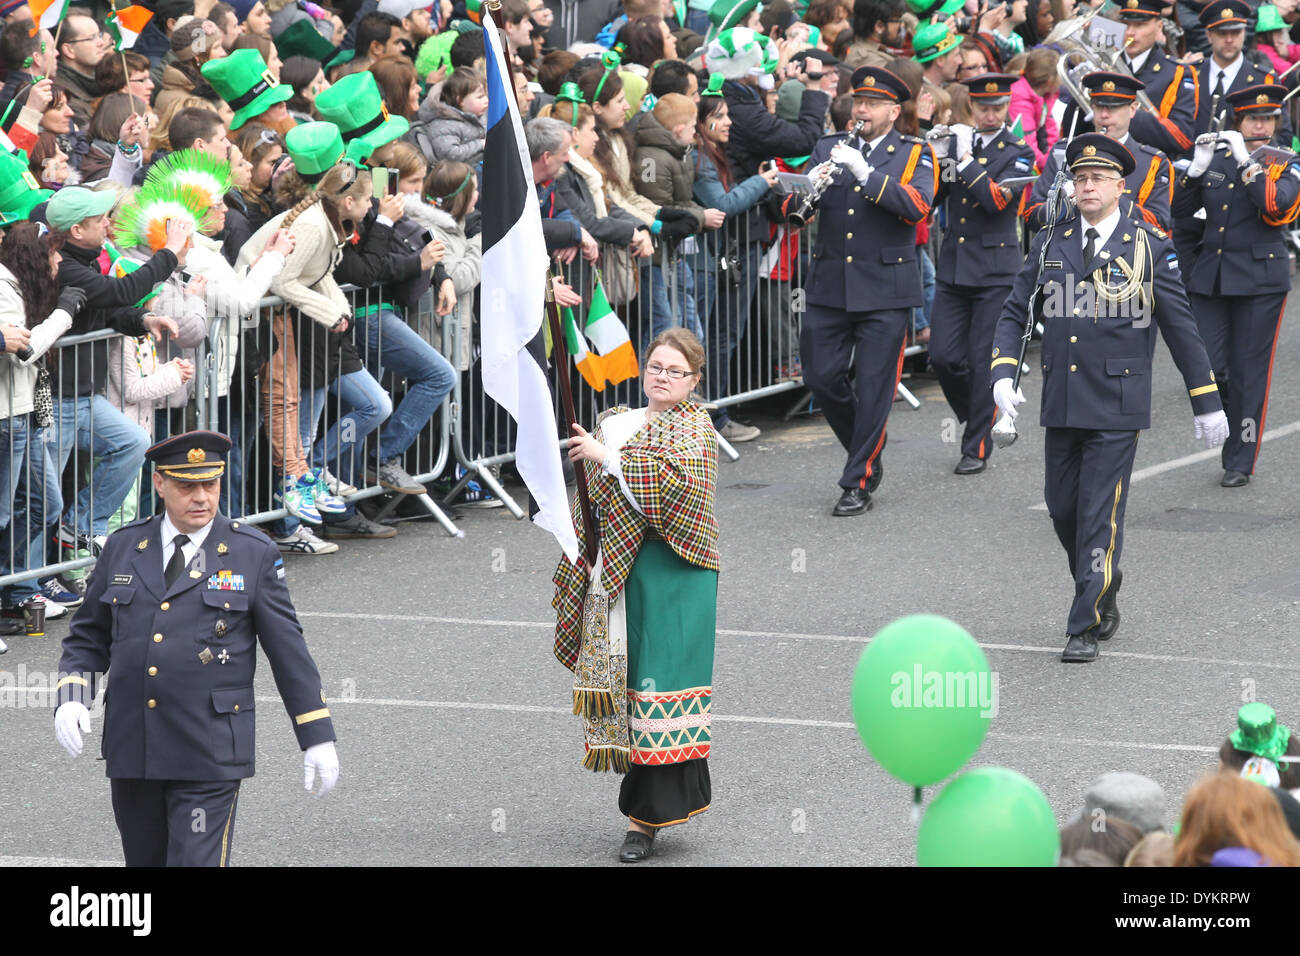 Eine Frau hält eine estnische Fahne während der St. Patricks Day Parade in Dublin Stadtzentrum Stockfoto